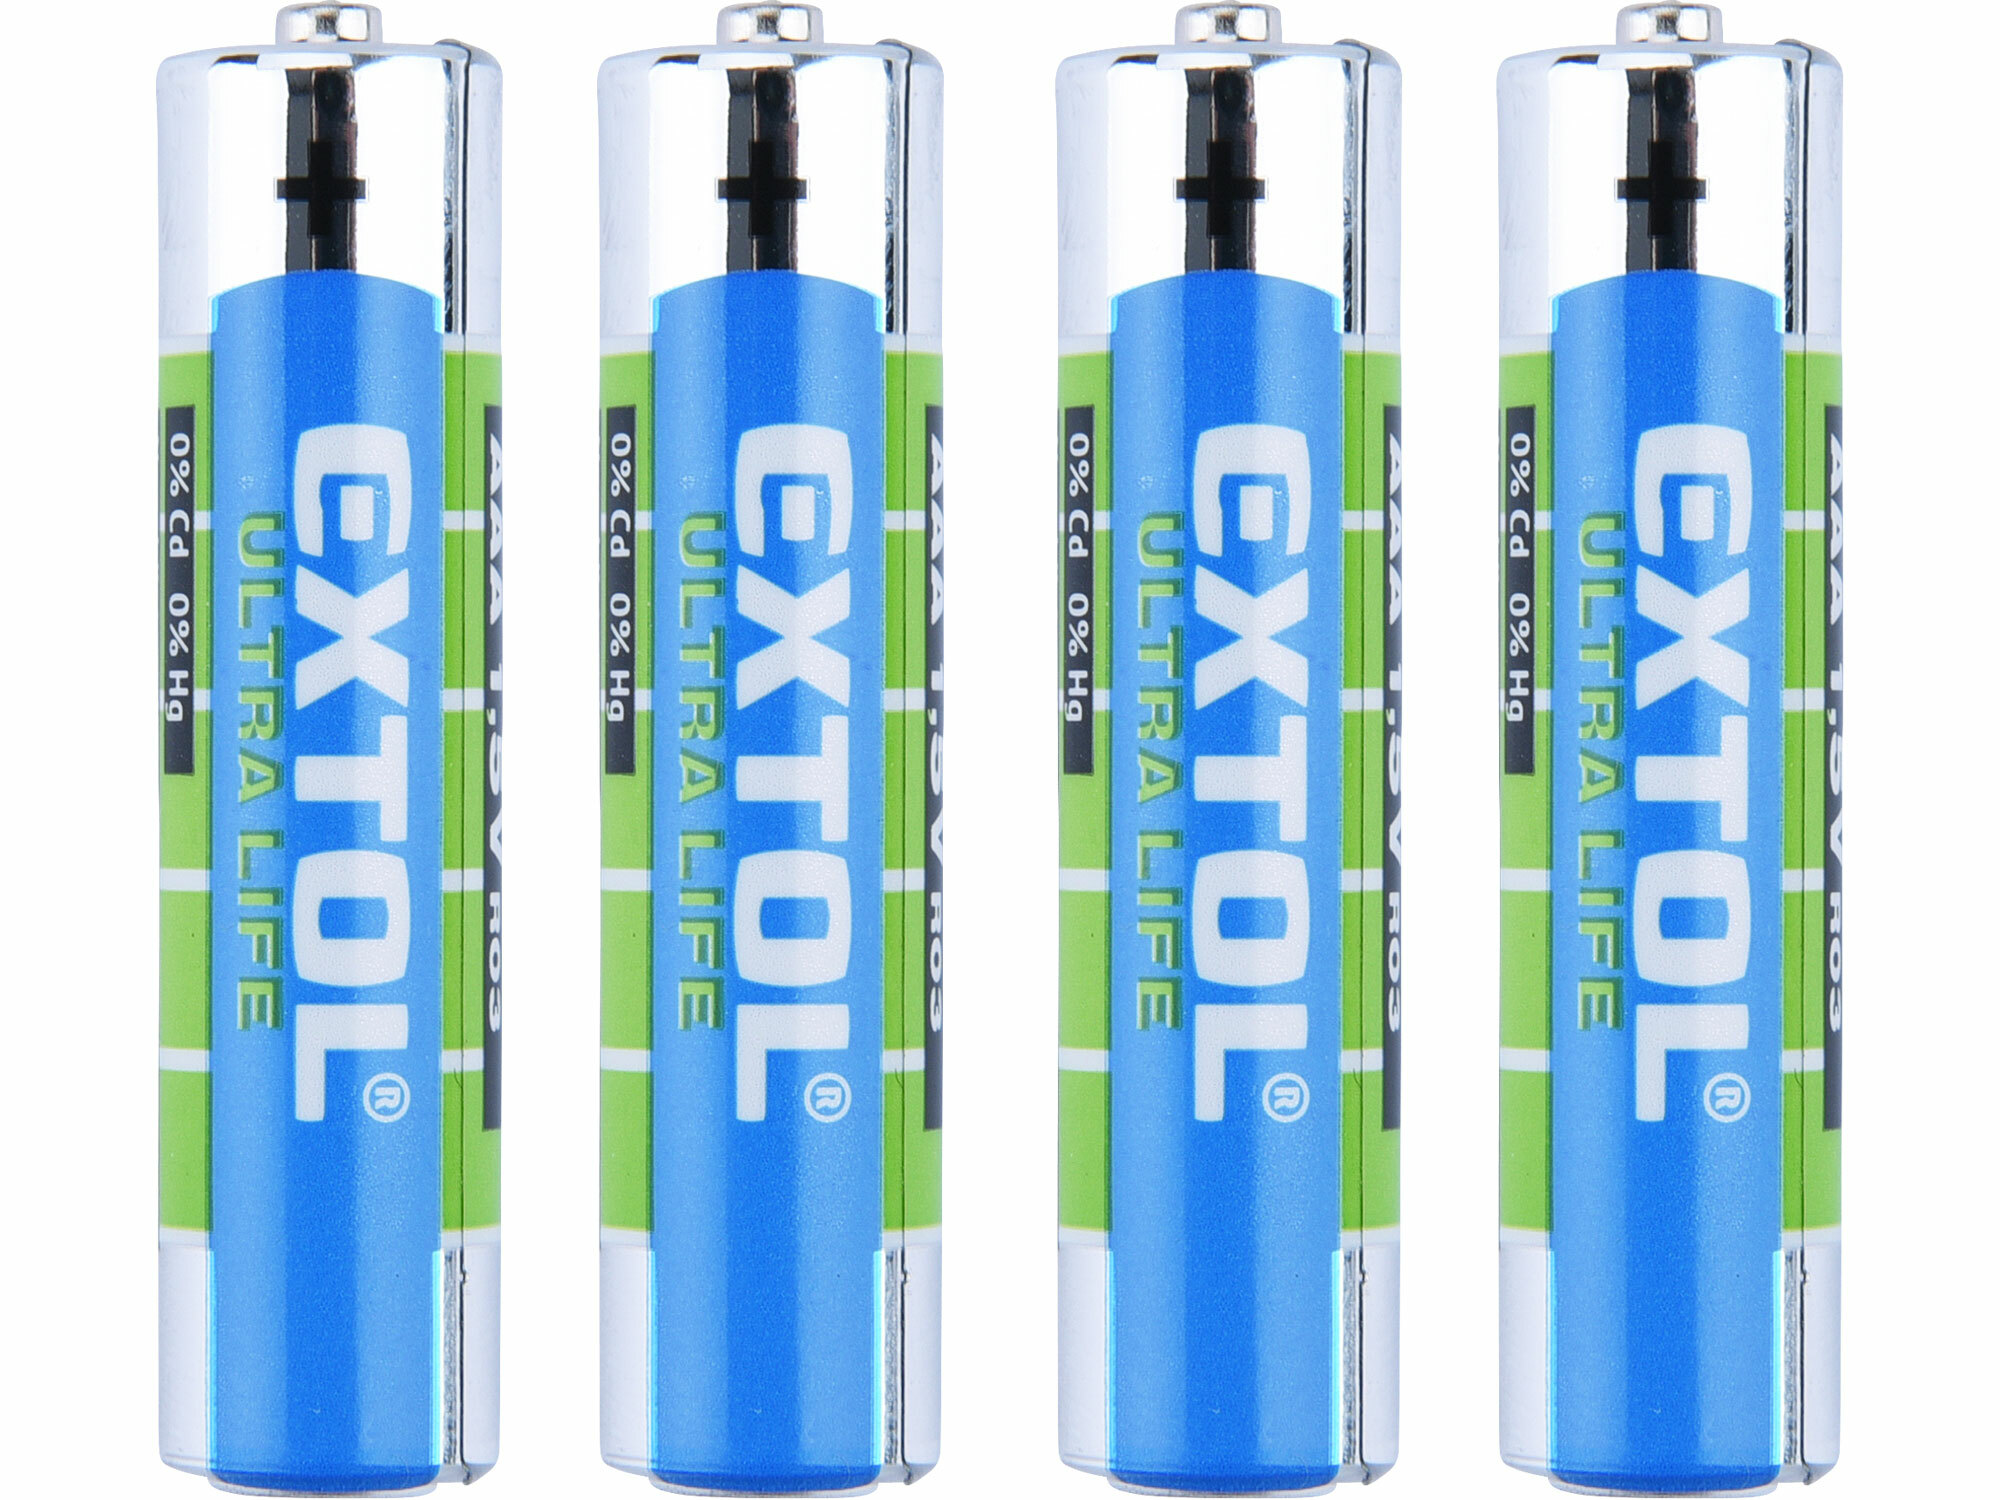 Batéria zink-chloridová 4ks, 1,5V, typ AAA, EXTOL ENERGY